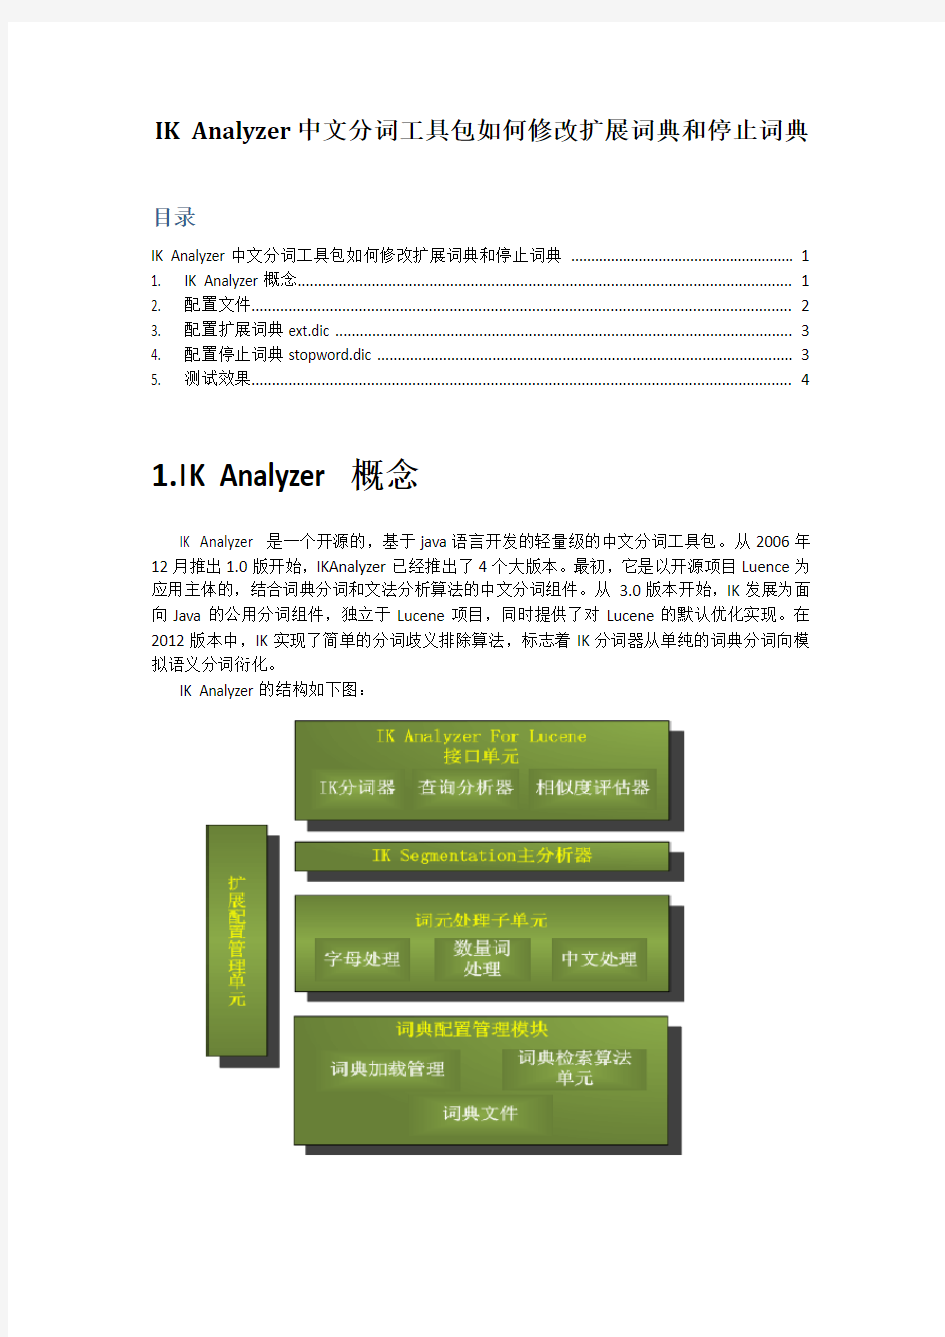 IK Analyzer中文分词工具包如何修改扩展词典和停止词典